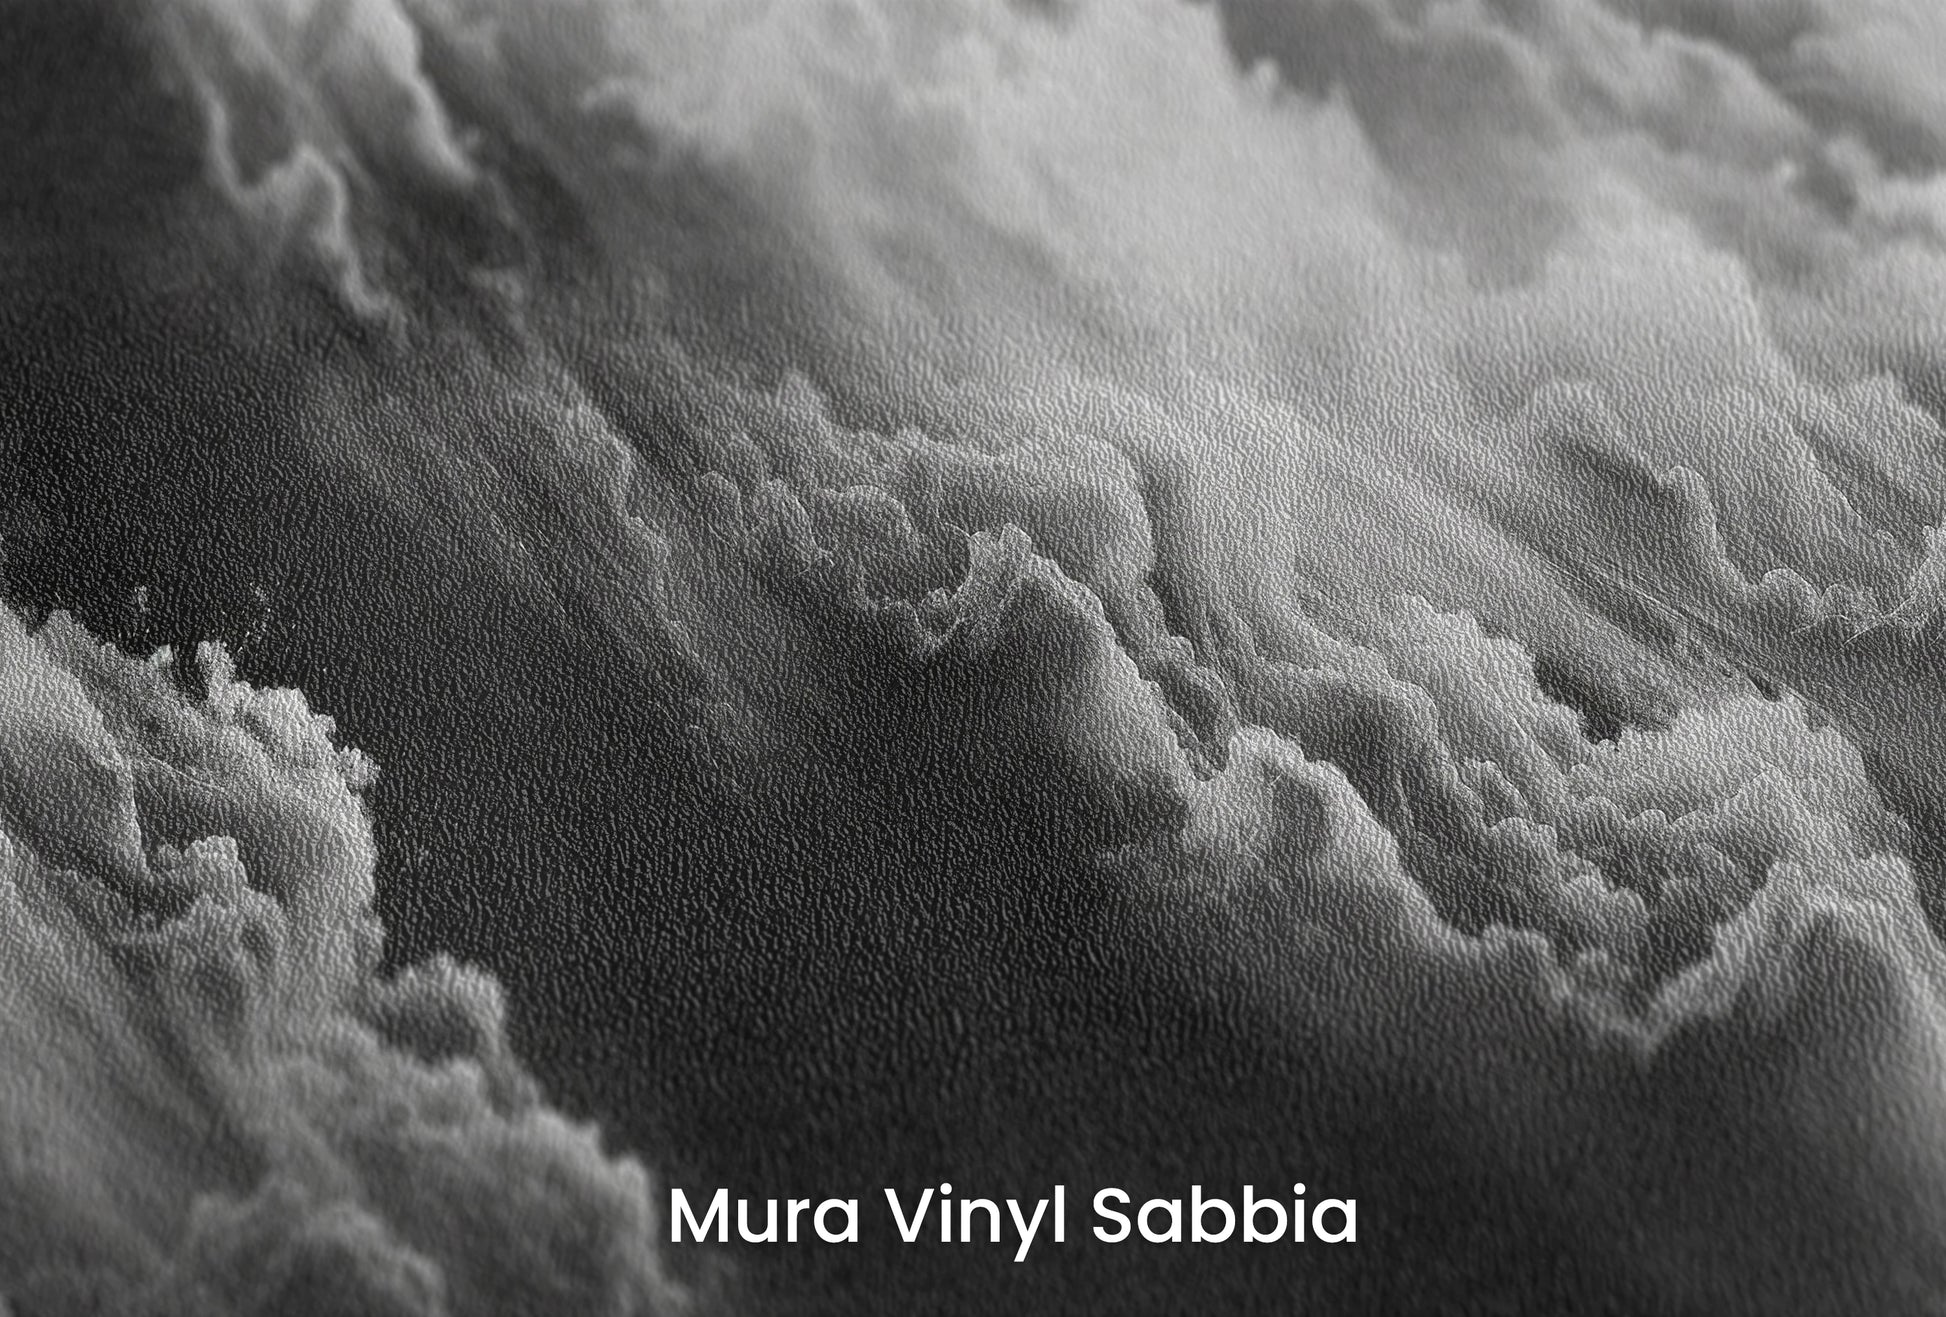 Zbliżenie na artystyczną fototapetę o nazwie Whispering Mists na podłożu Mura Vinyl Sabbia struktura grubego ziarna piasku.